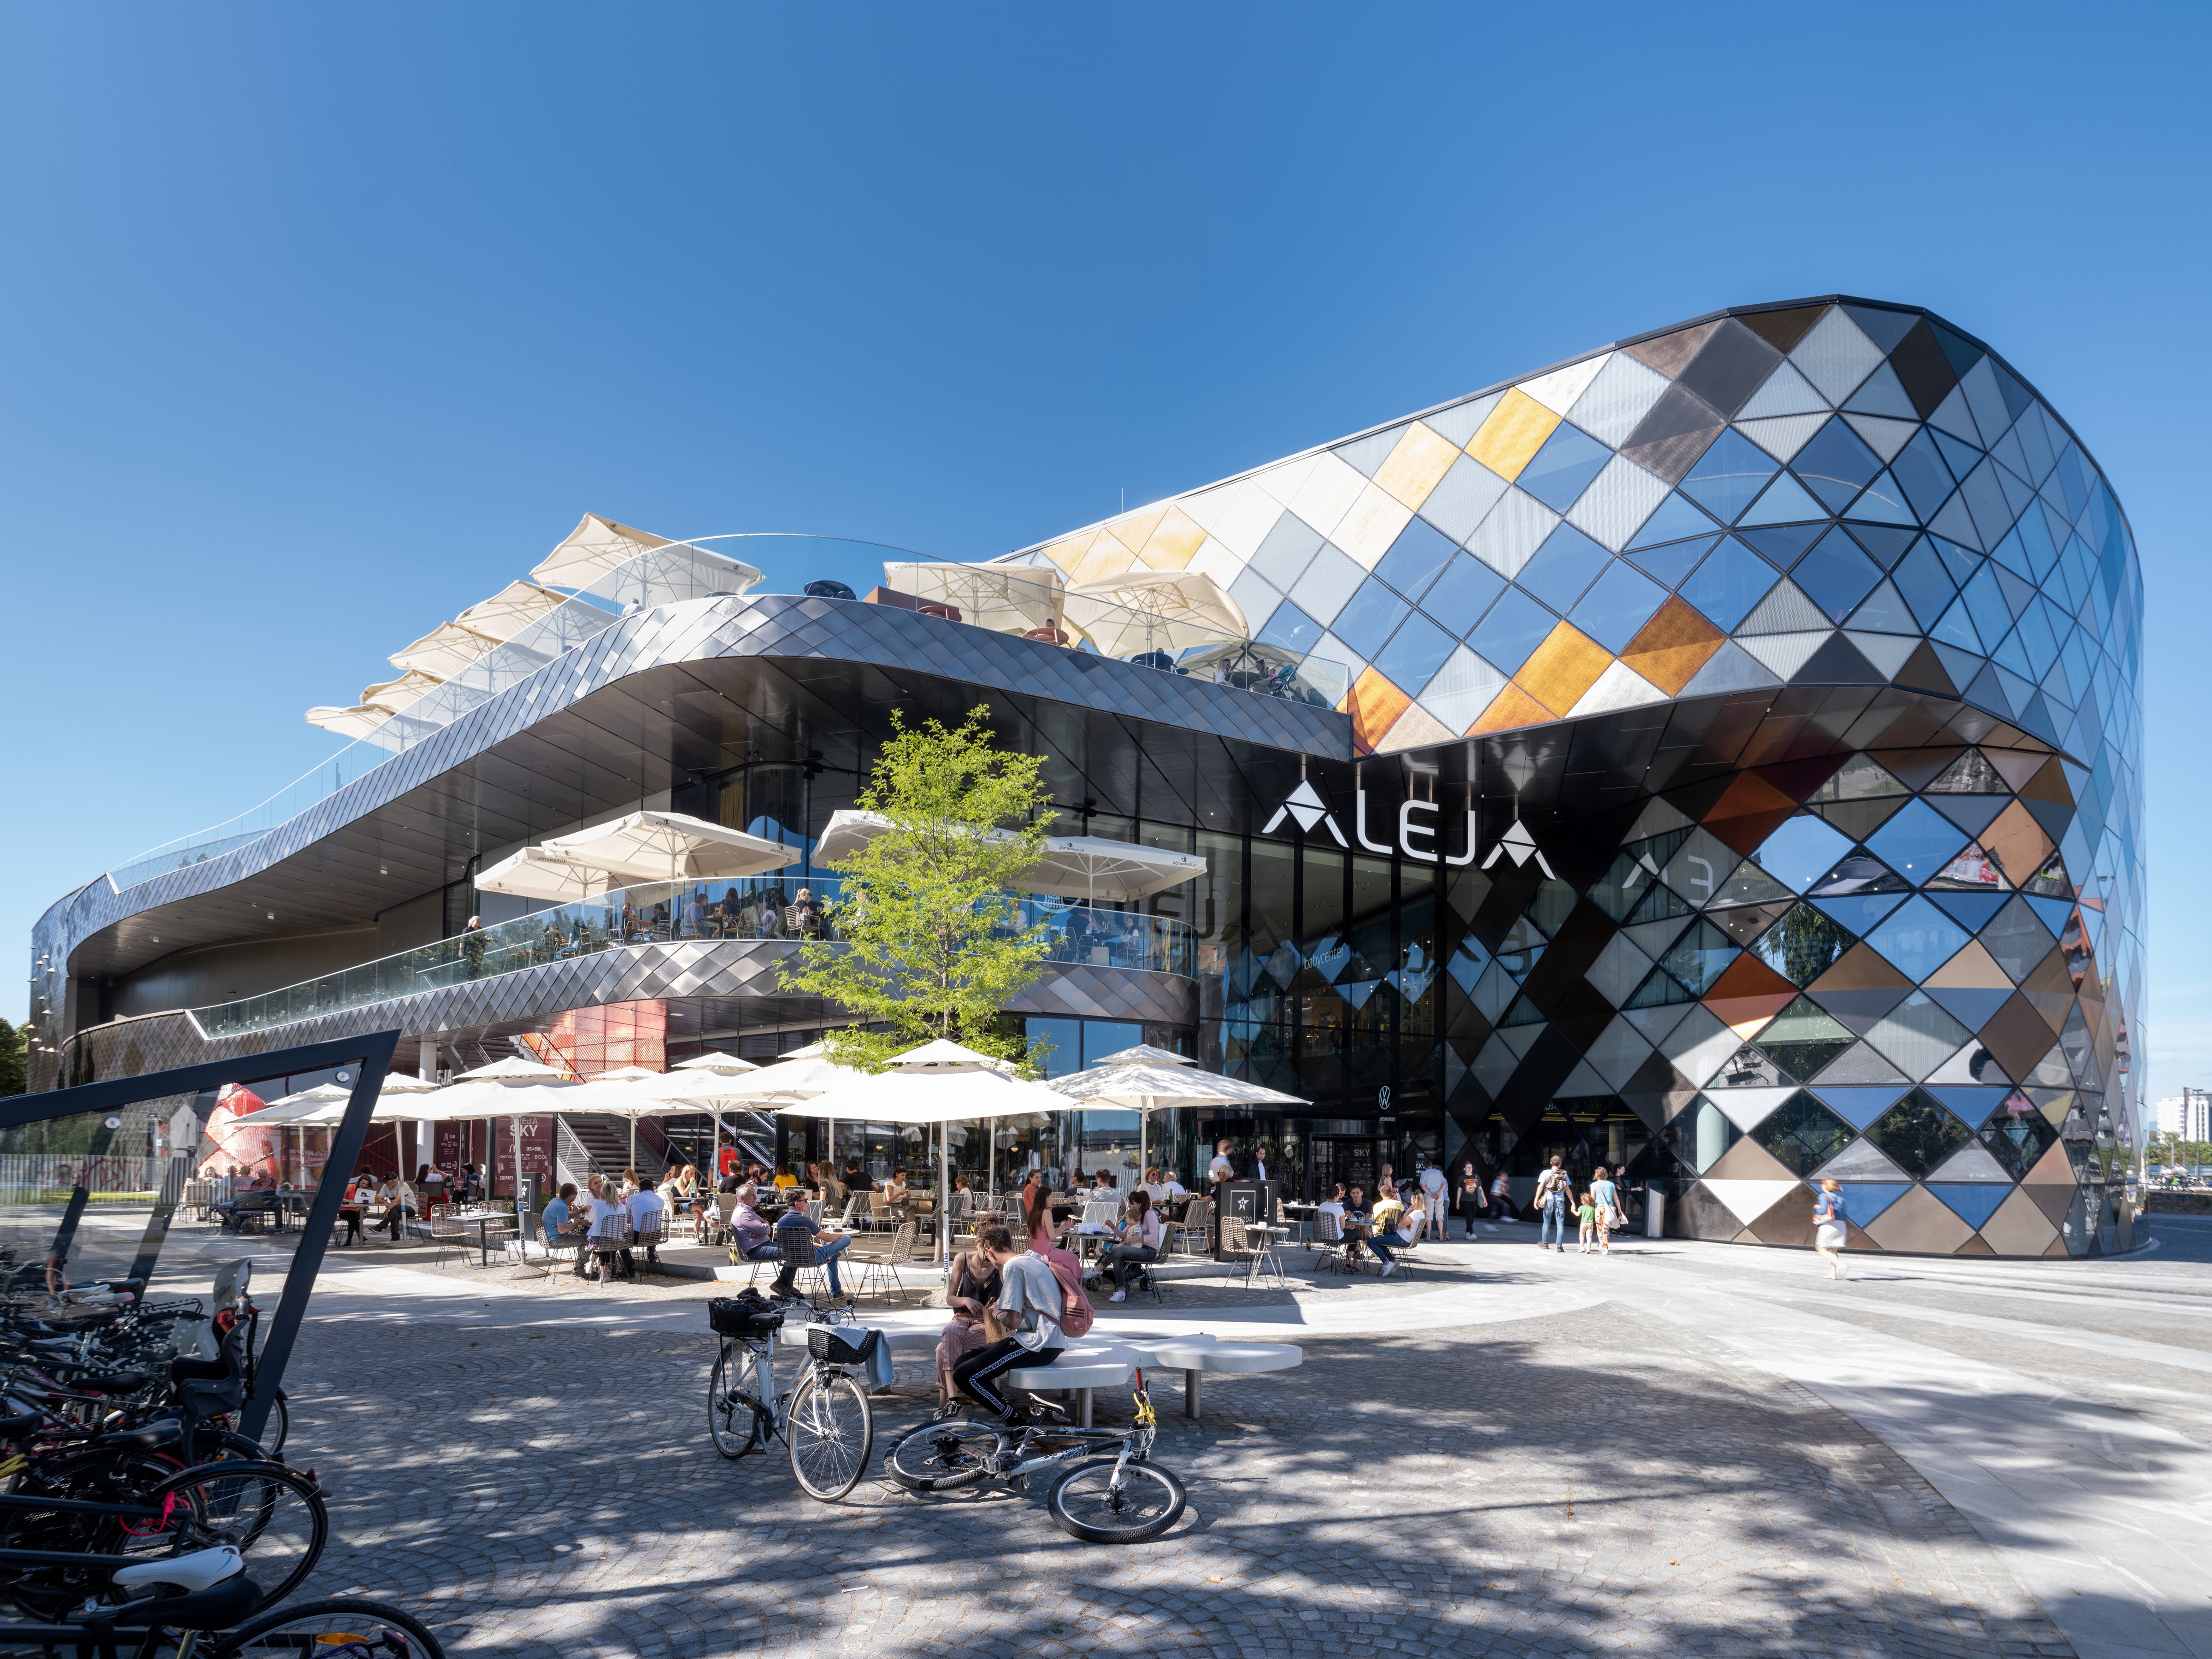 Stadtteil- und Shoppingzentrum ALEJA in Ljubljana, von ATP integral mit BIM geplant.<br><span class='image_copyright'>ATP/Pierer</span><br>